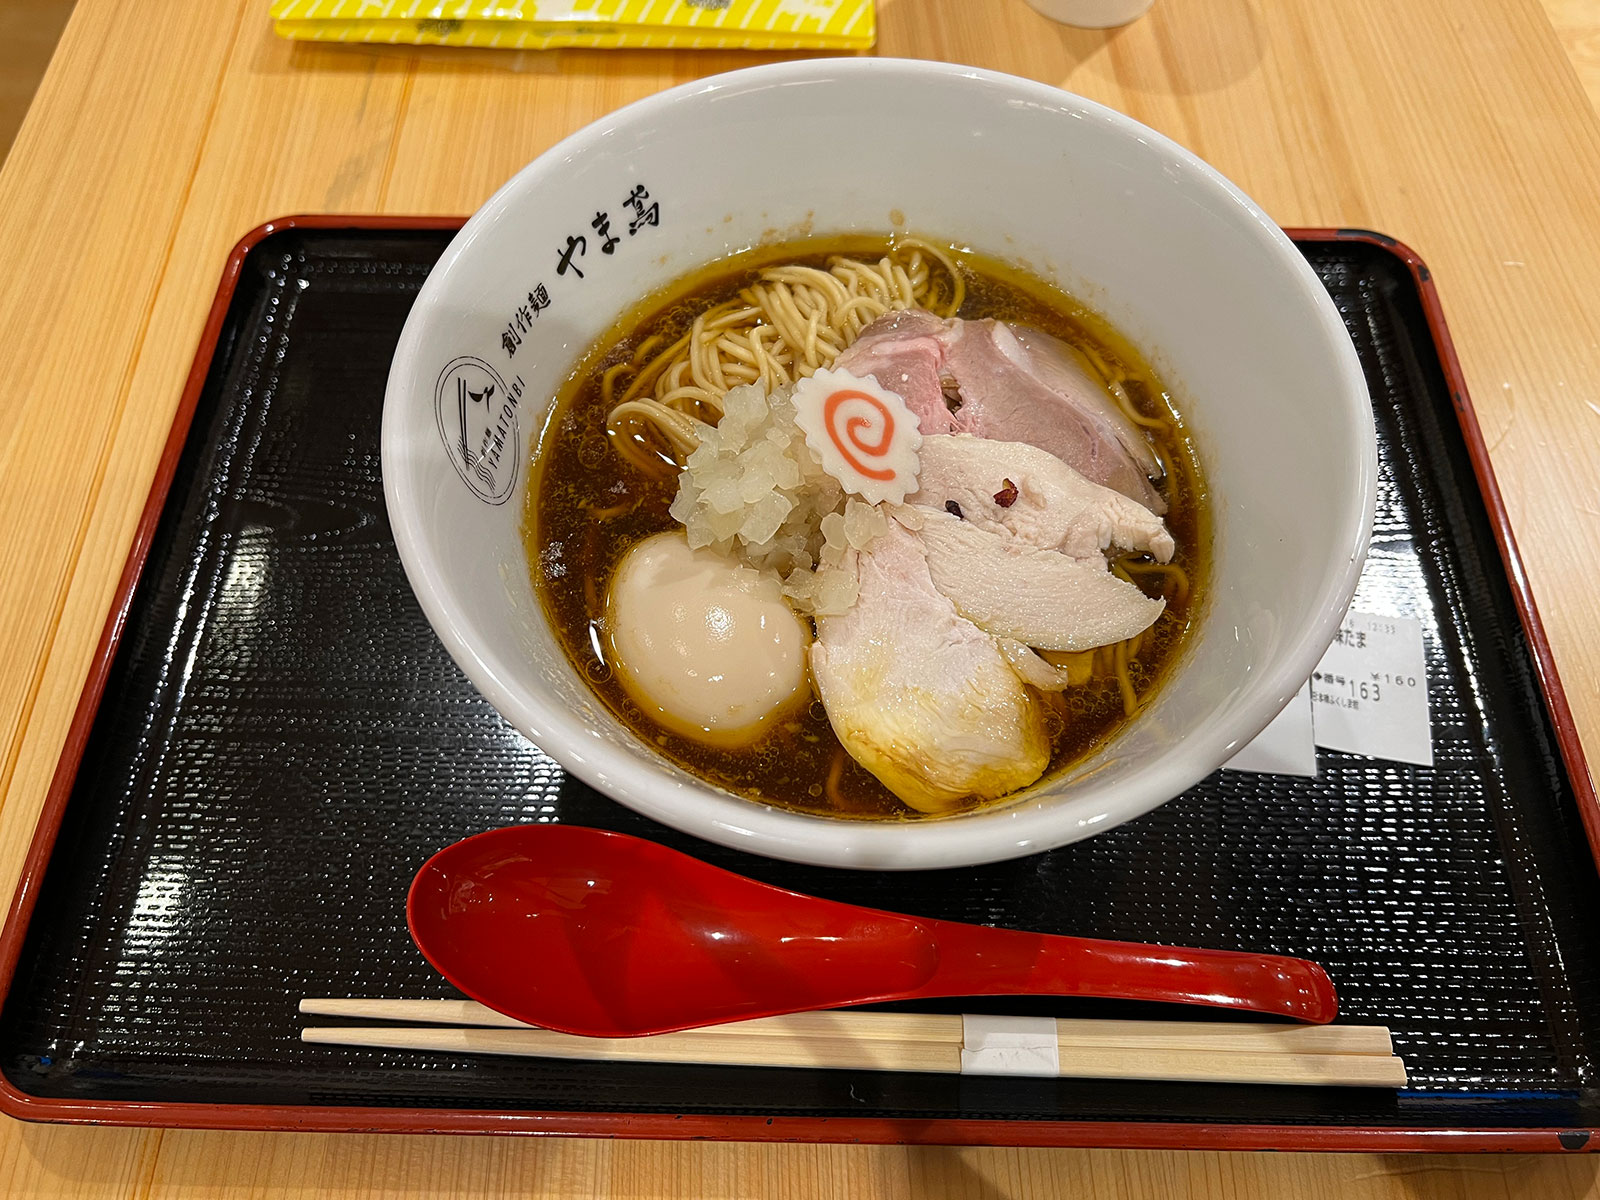 創作麺 やま鳶の福島地鶏 川俣軍鶏らぁ麺、トッピングに特製味たま。